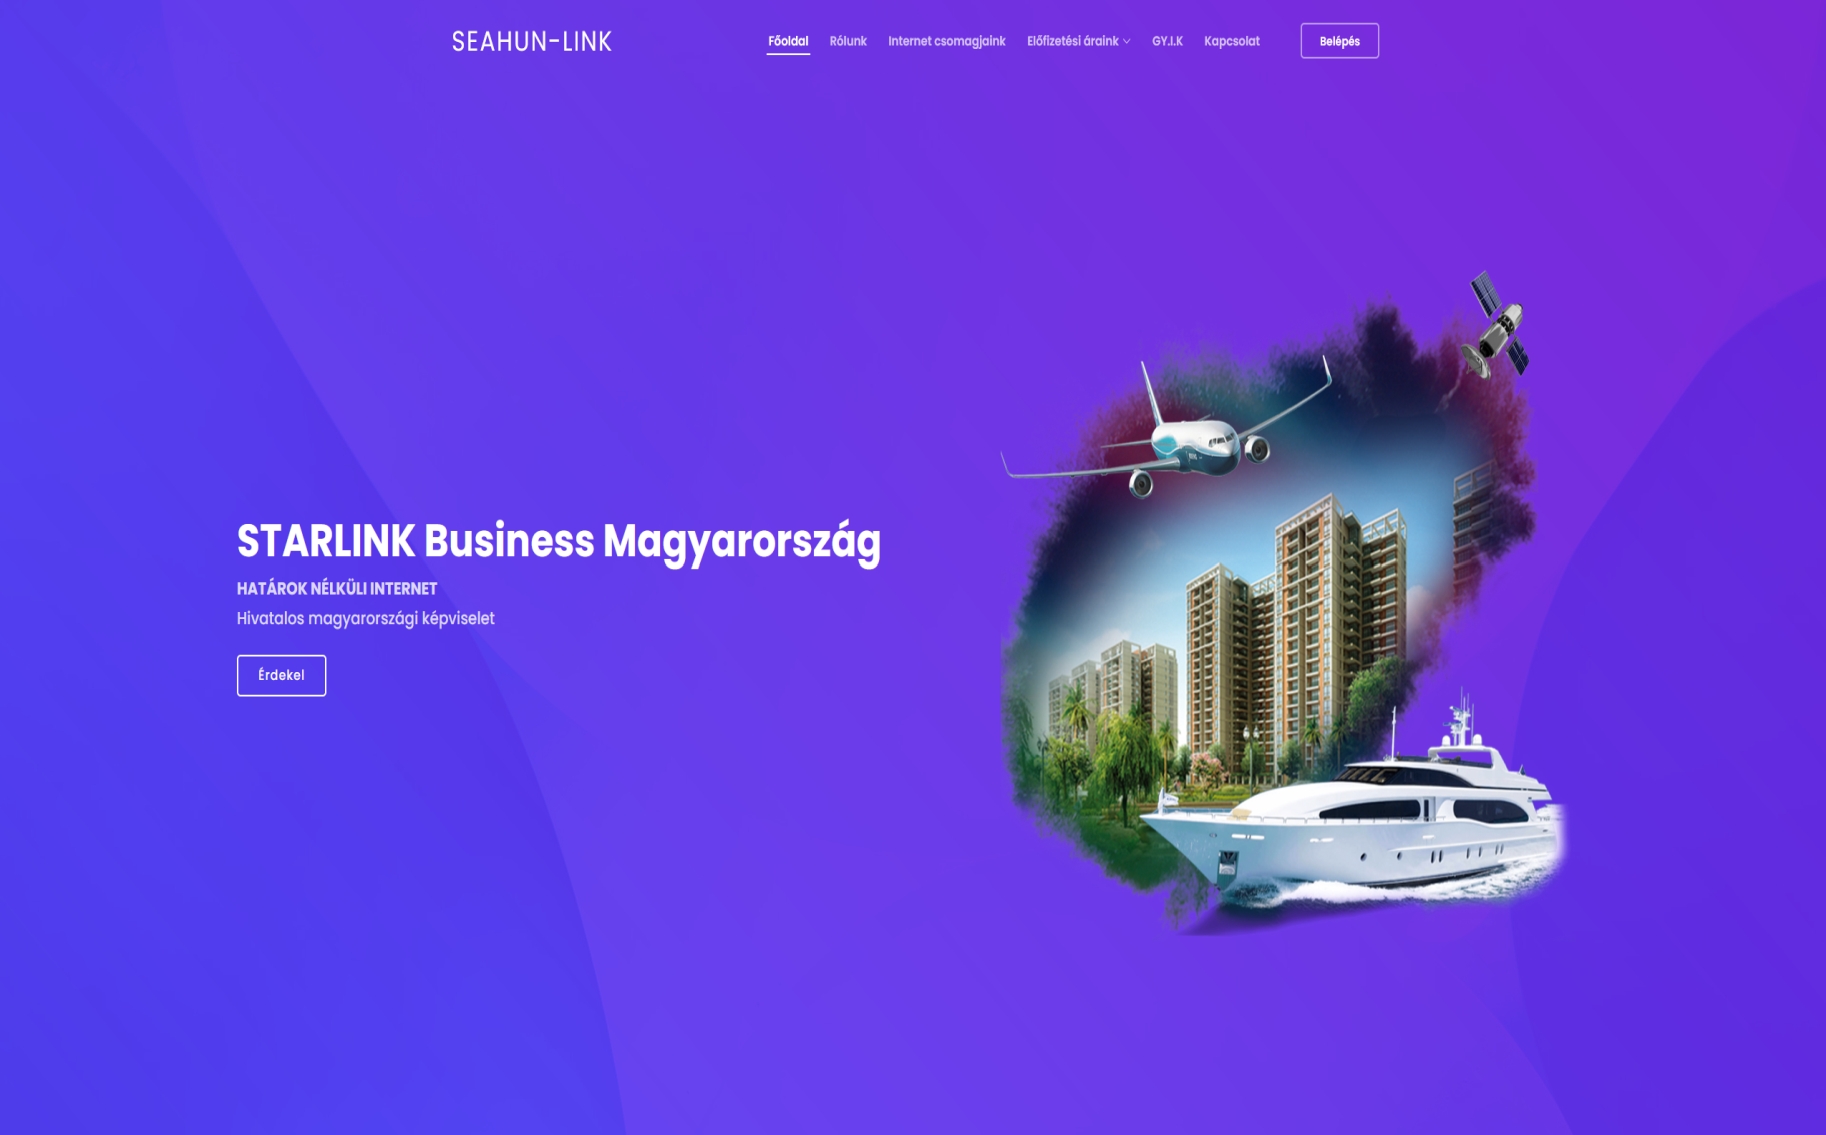 Starlink Maritime - Magyarországi képviselet